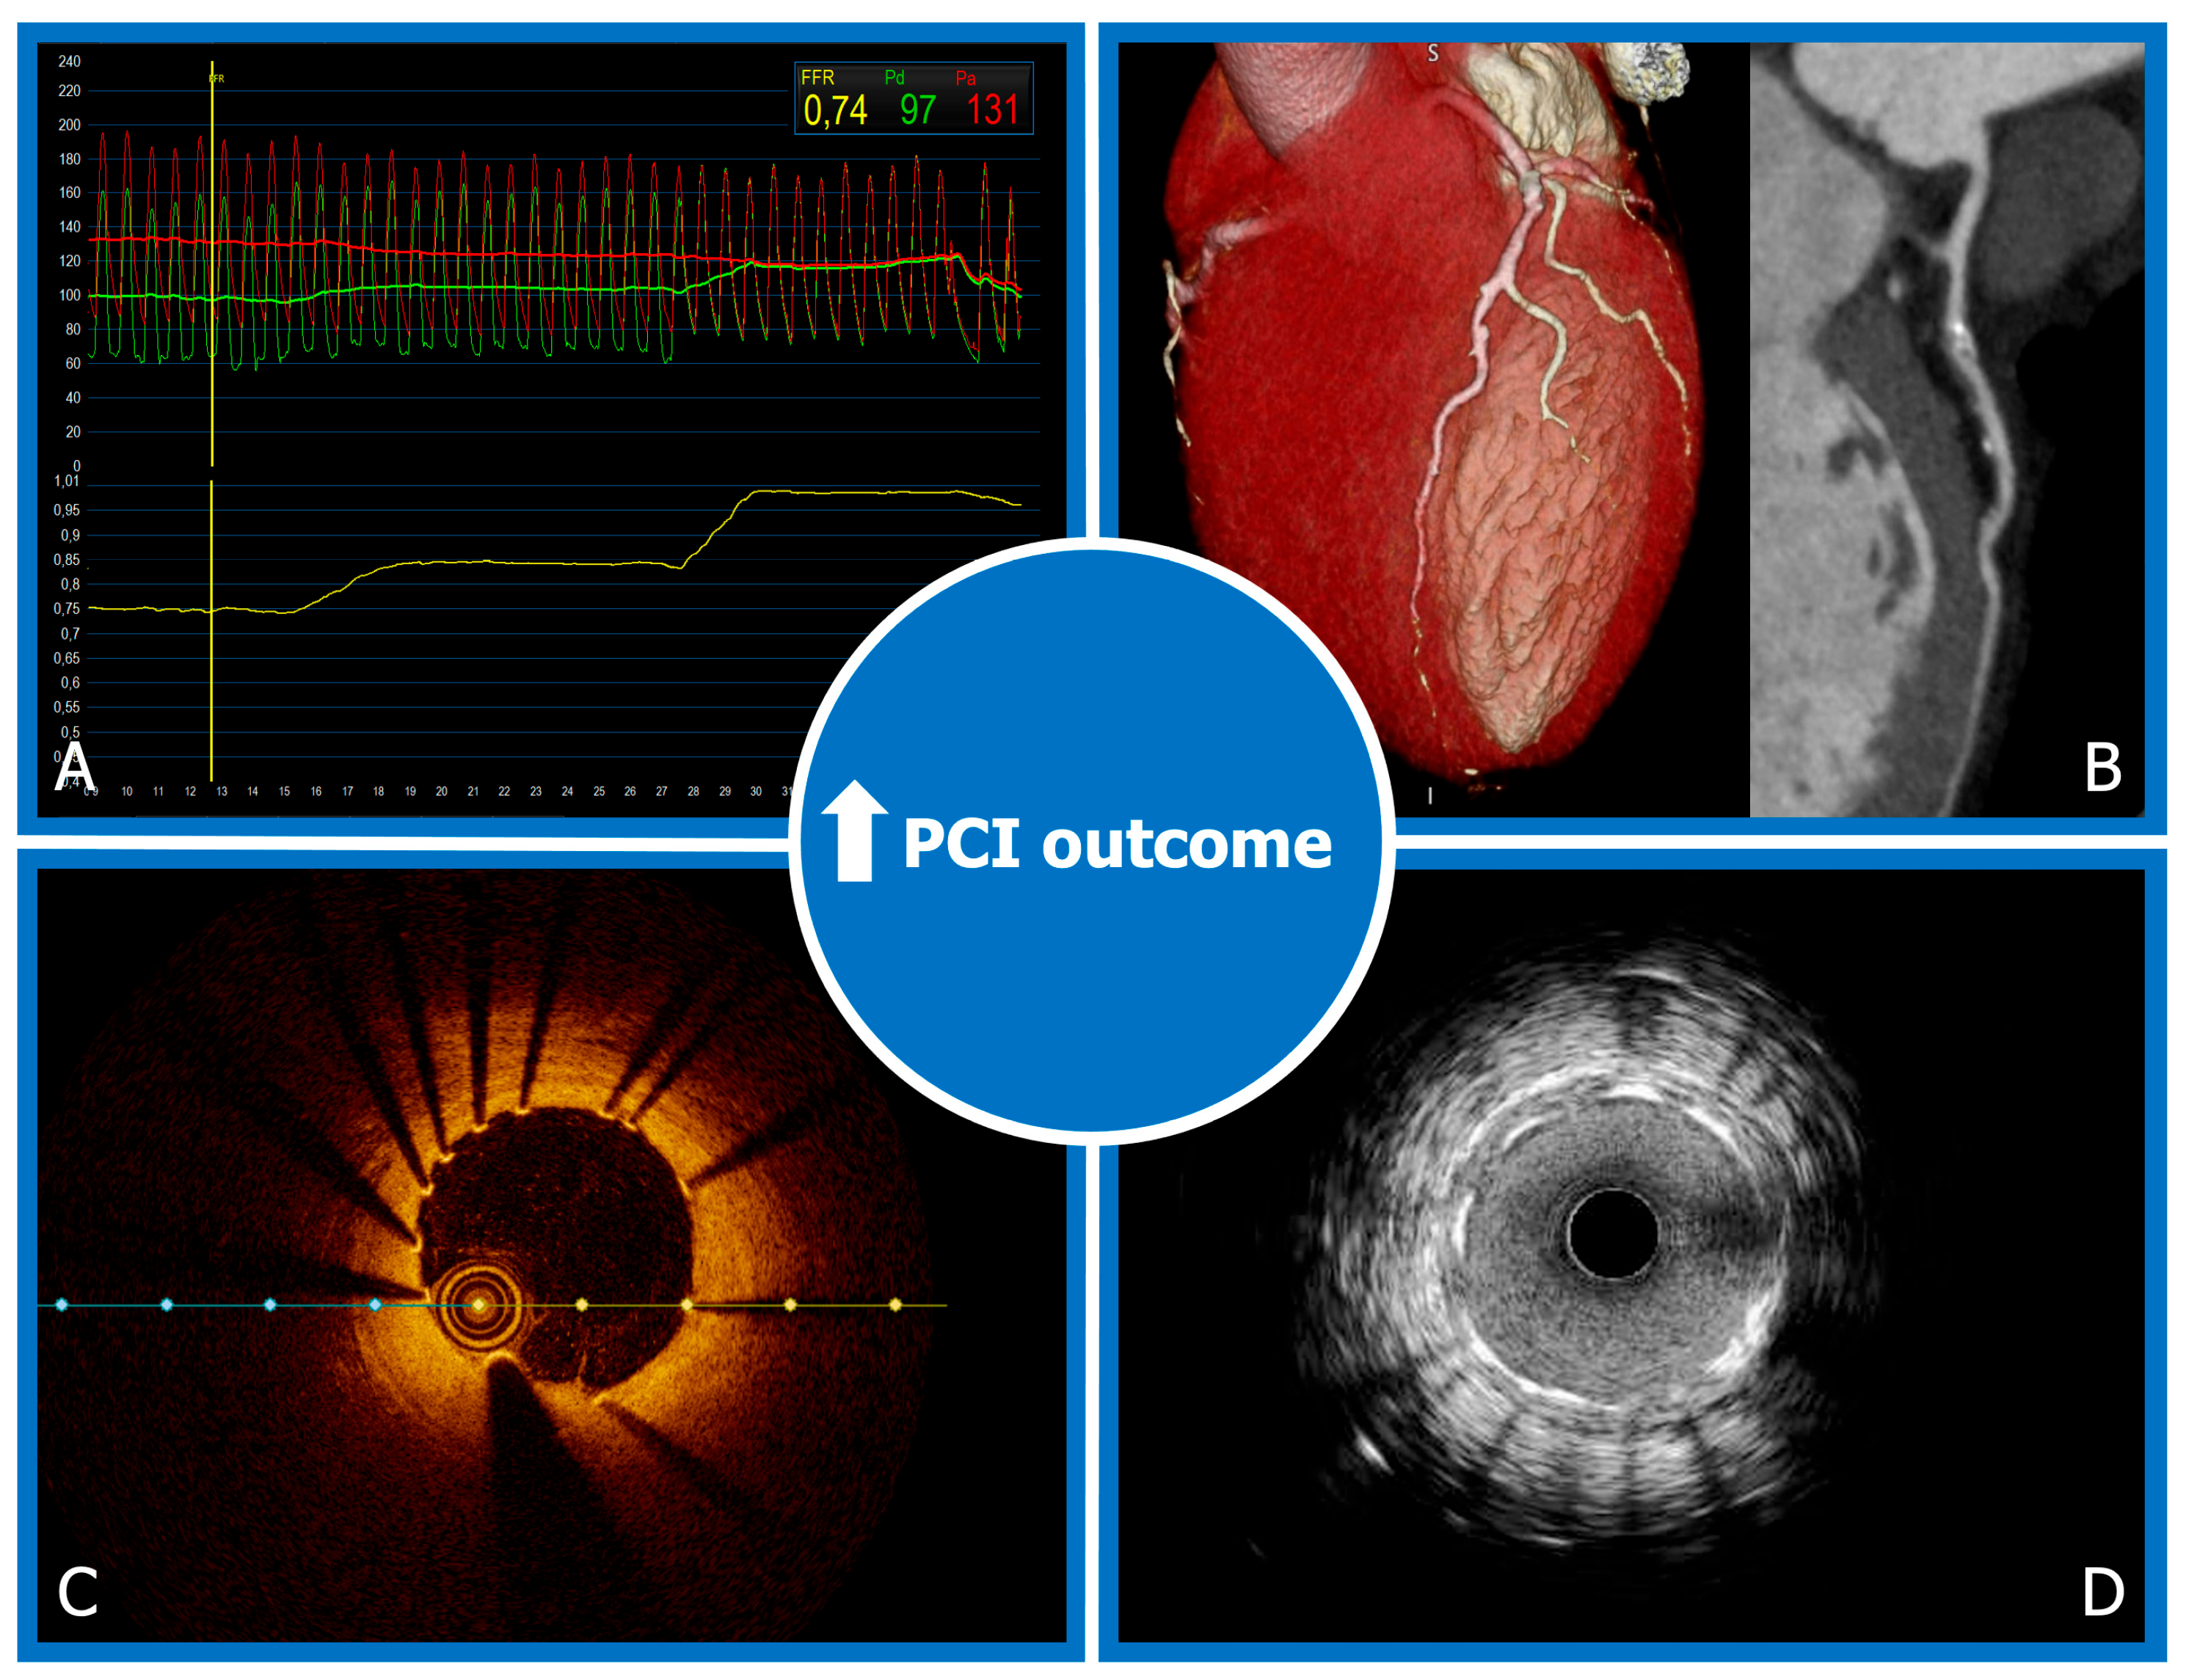 Clinical outcomes of upgrade to versus de novo cardiac